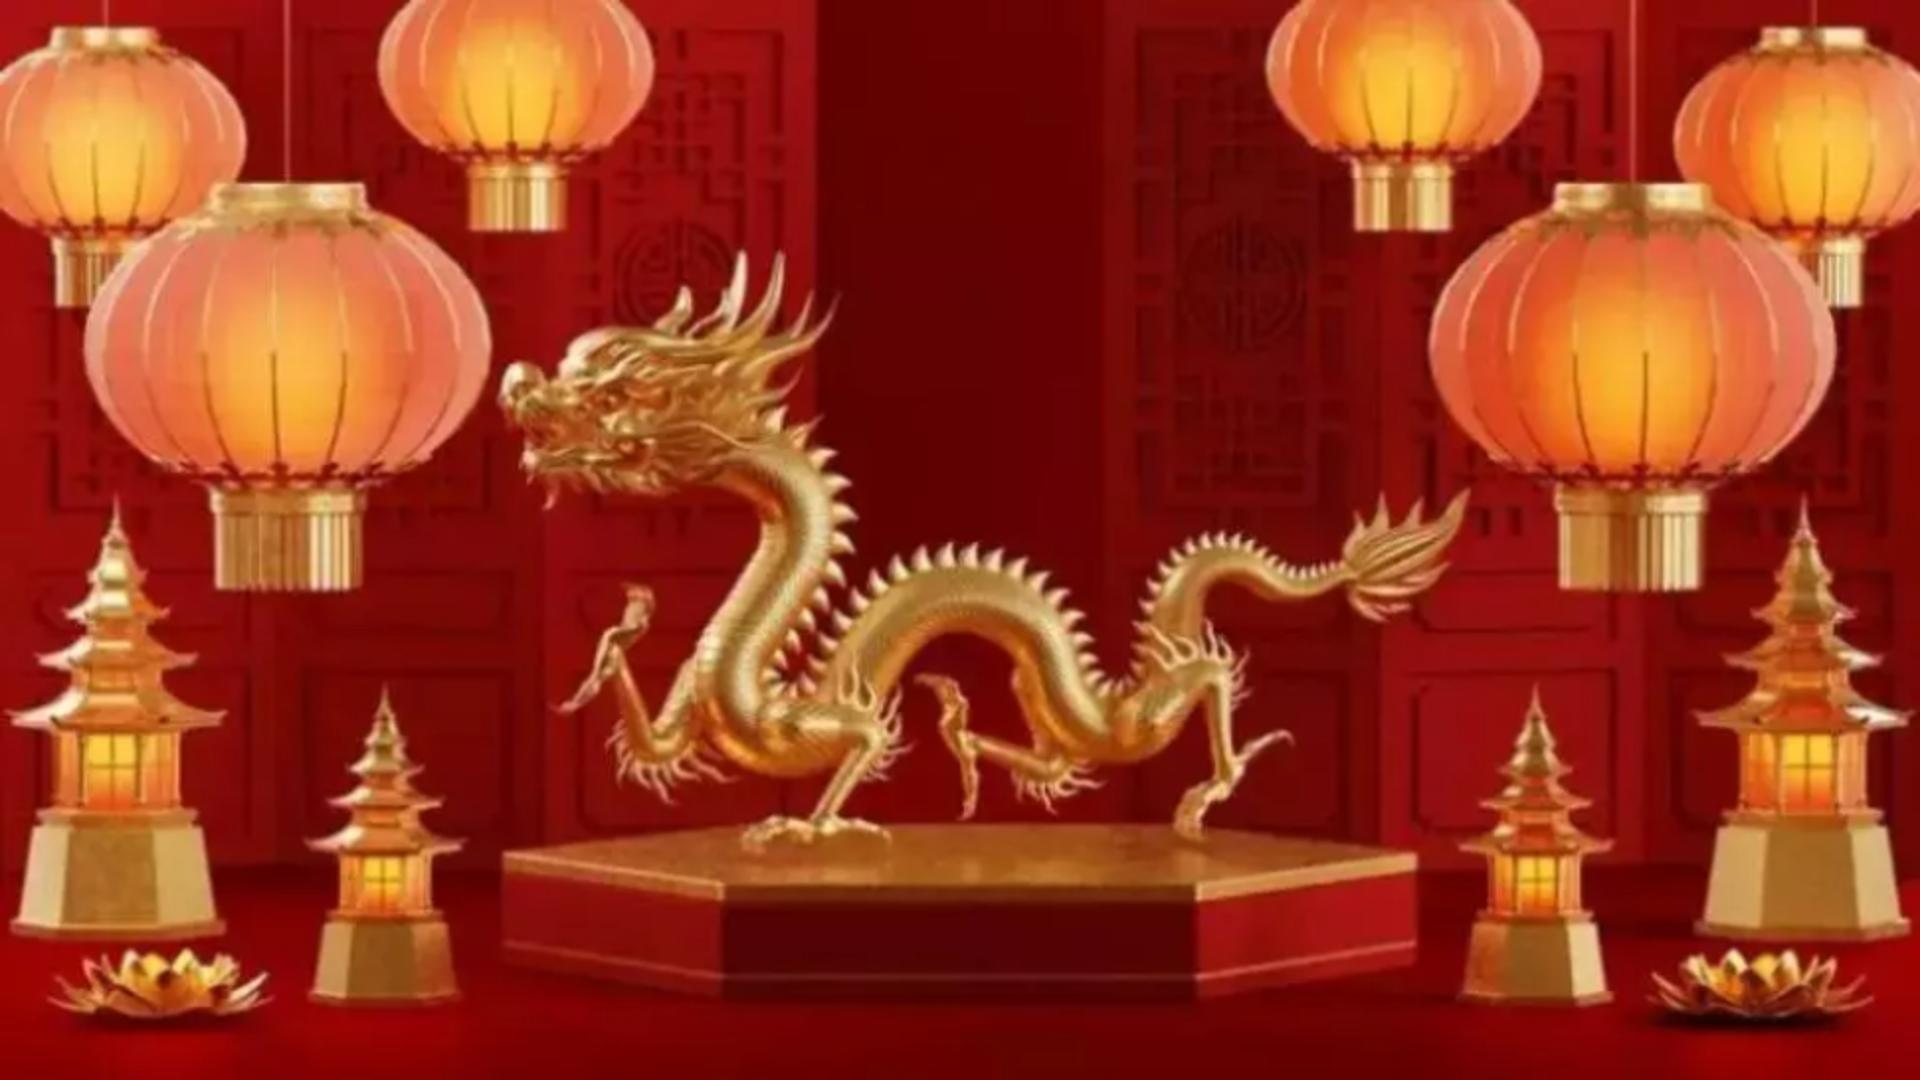 Horoscopul norocului în anul chinezesc al Dragonului de lemn. Punctul forte care aduce mari realizări, pentru fiecare zodie în parte